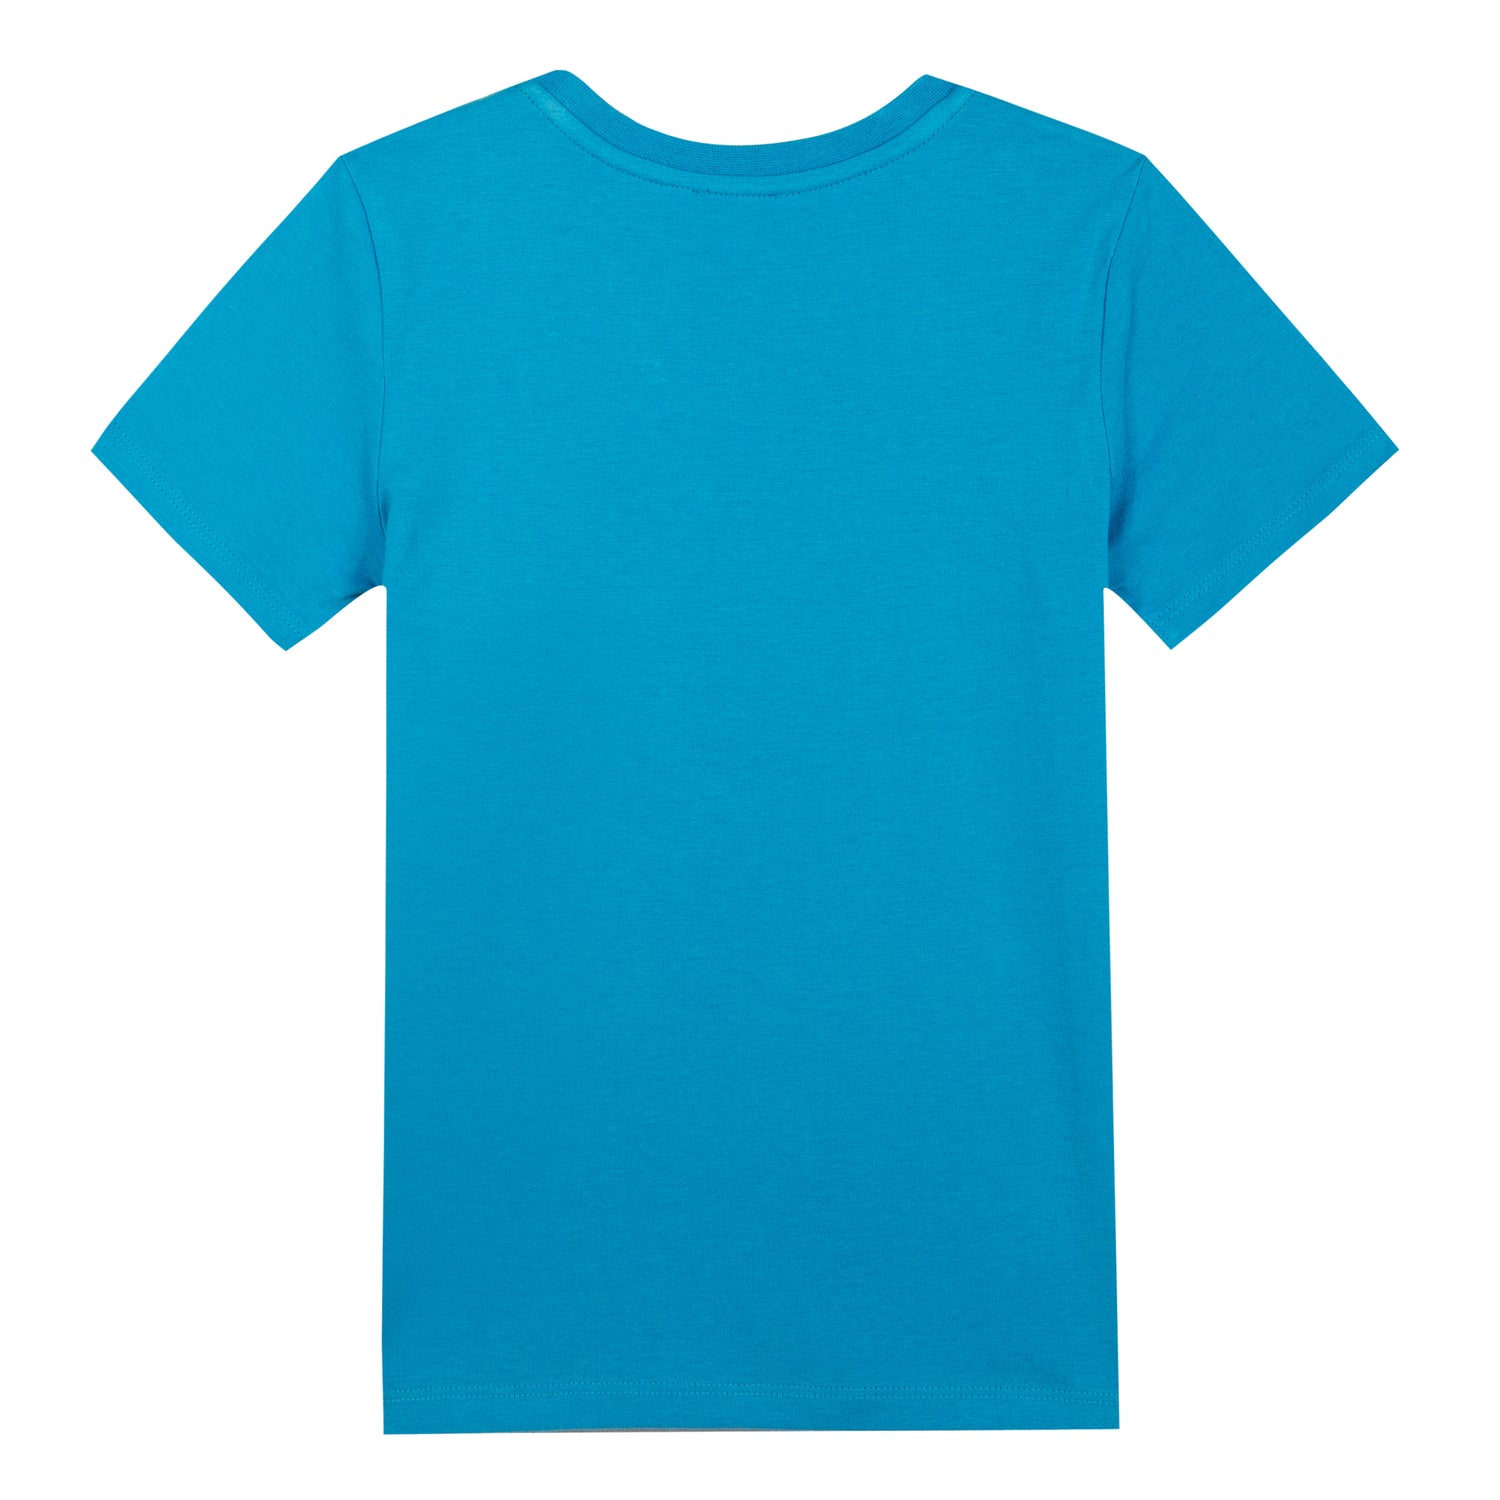 Boys Scuba Blue Cotton T-shirt